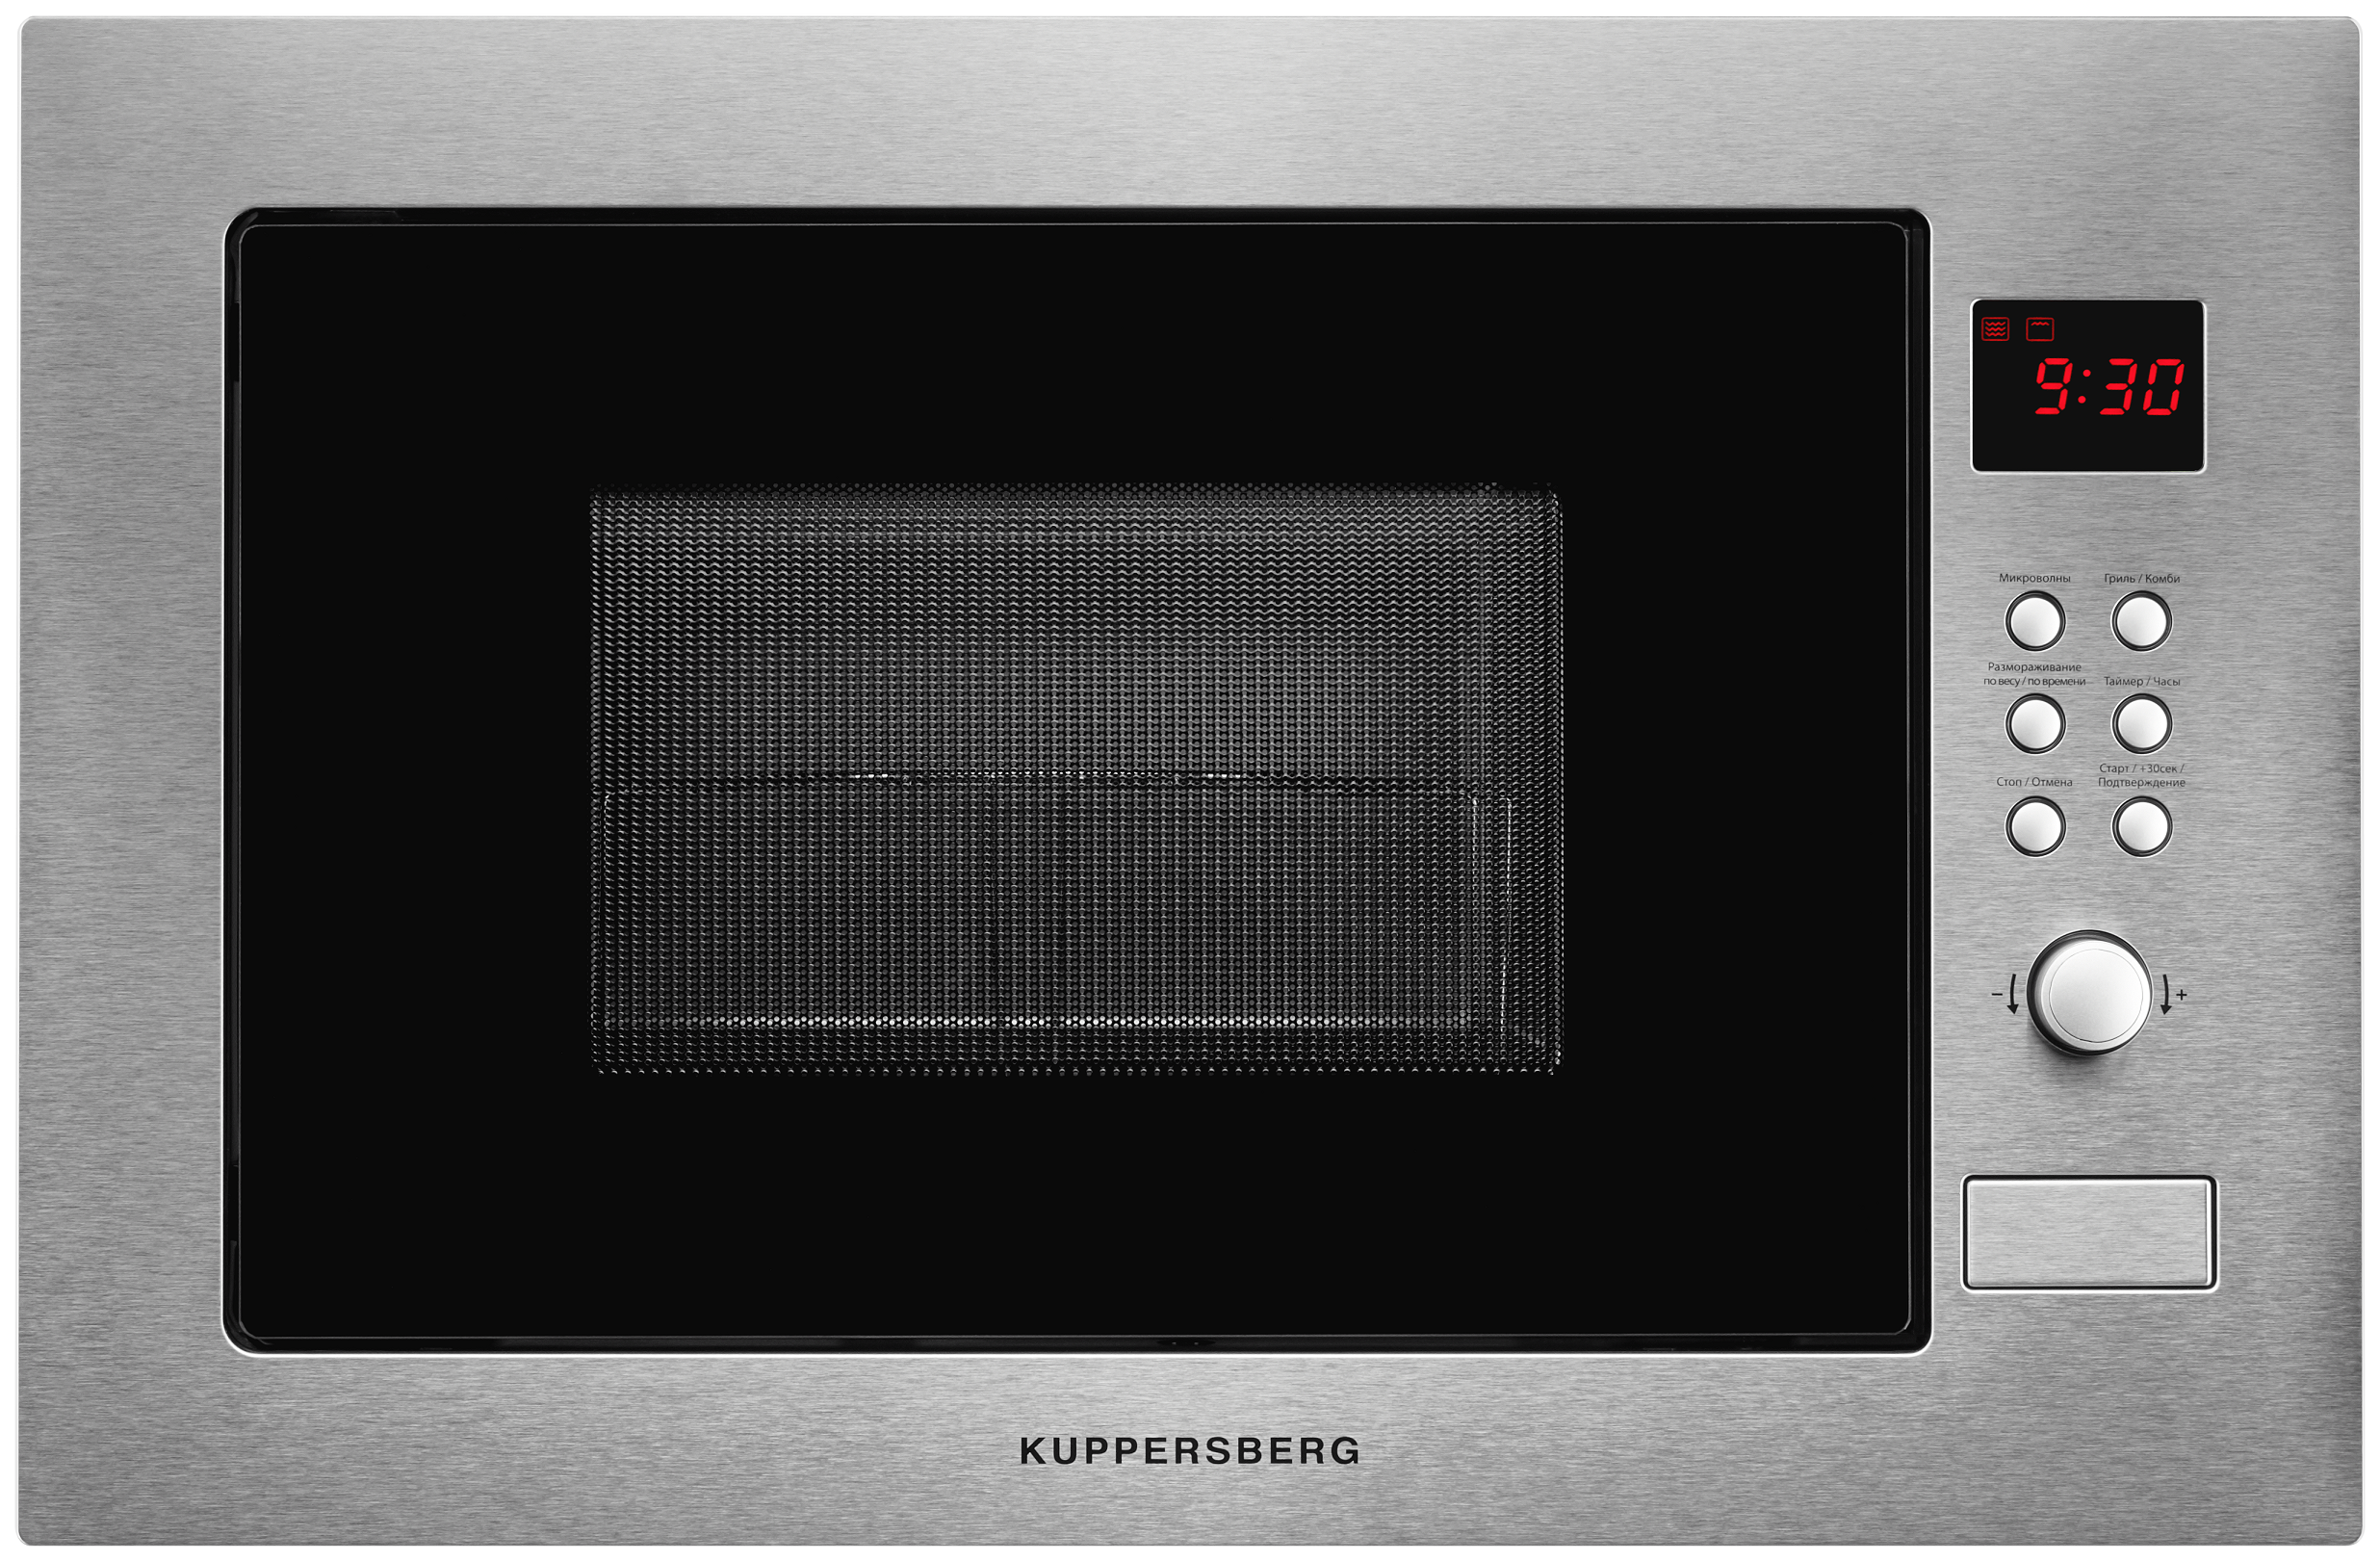 Встраиваемая микроволновая печь KUPPERSBERG HMW 635 серебристая встраиваемая микроволновая печь kuppersberg hmw 645 b черная